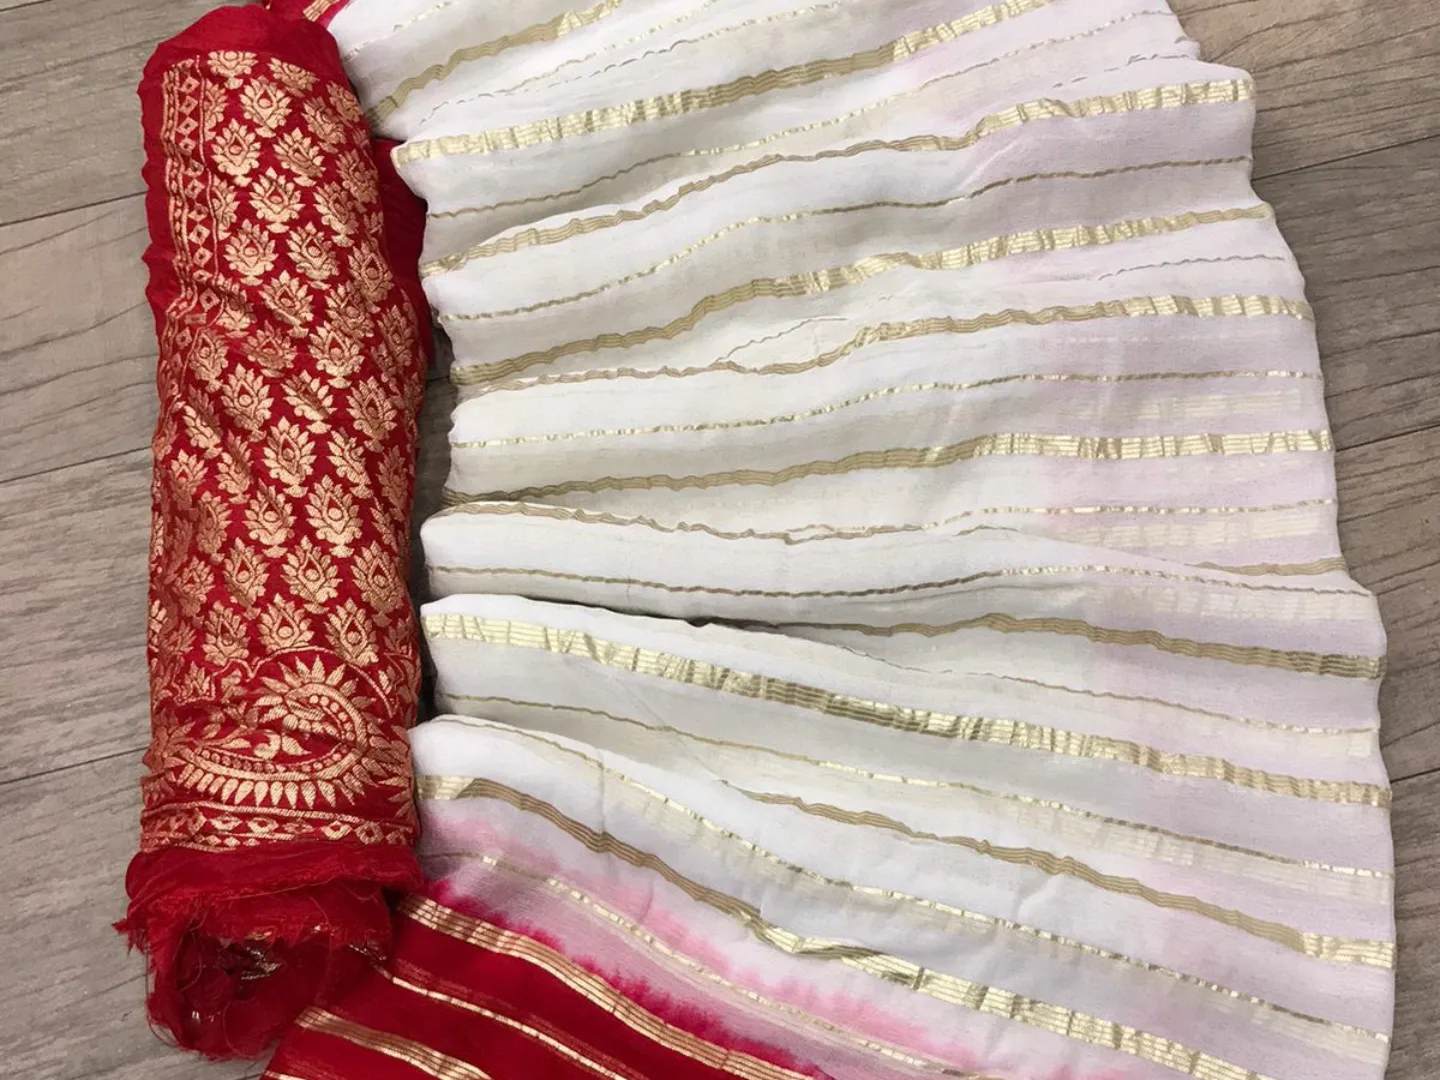 Post image Falguniya
pure jhorjt fabric with zari wives in saree havvy zari jeckt blouse
Price 1275/
#jaipursareecollection #jaipurbandhej #rajasthani_style #rajputisaree #jaipurbandhej #jaipurvastram #jaipursareecollection #designersarees #designwear #designerblouses #southindianweddings #southindianbride #indianwear #indianculture #indianwedding #indianfashion #indianbride